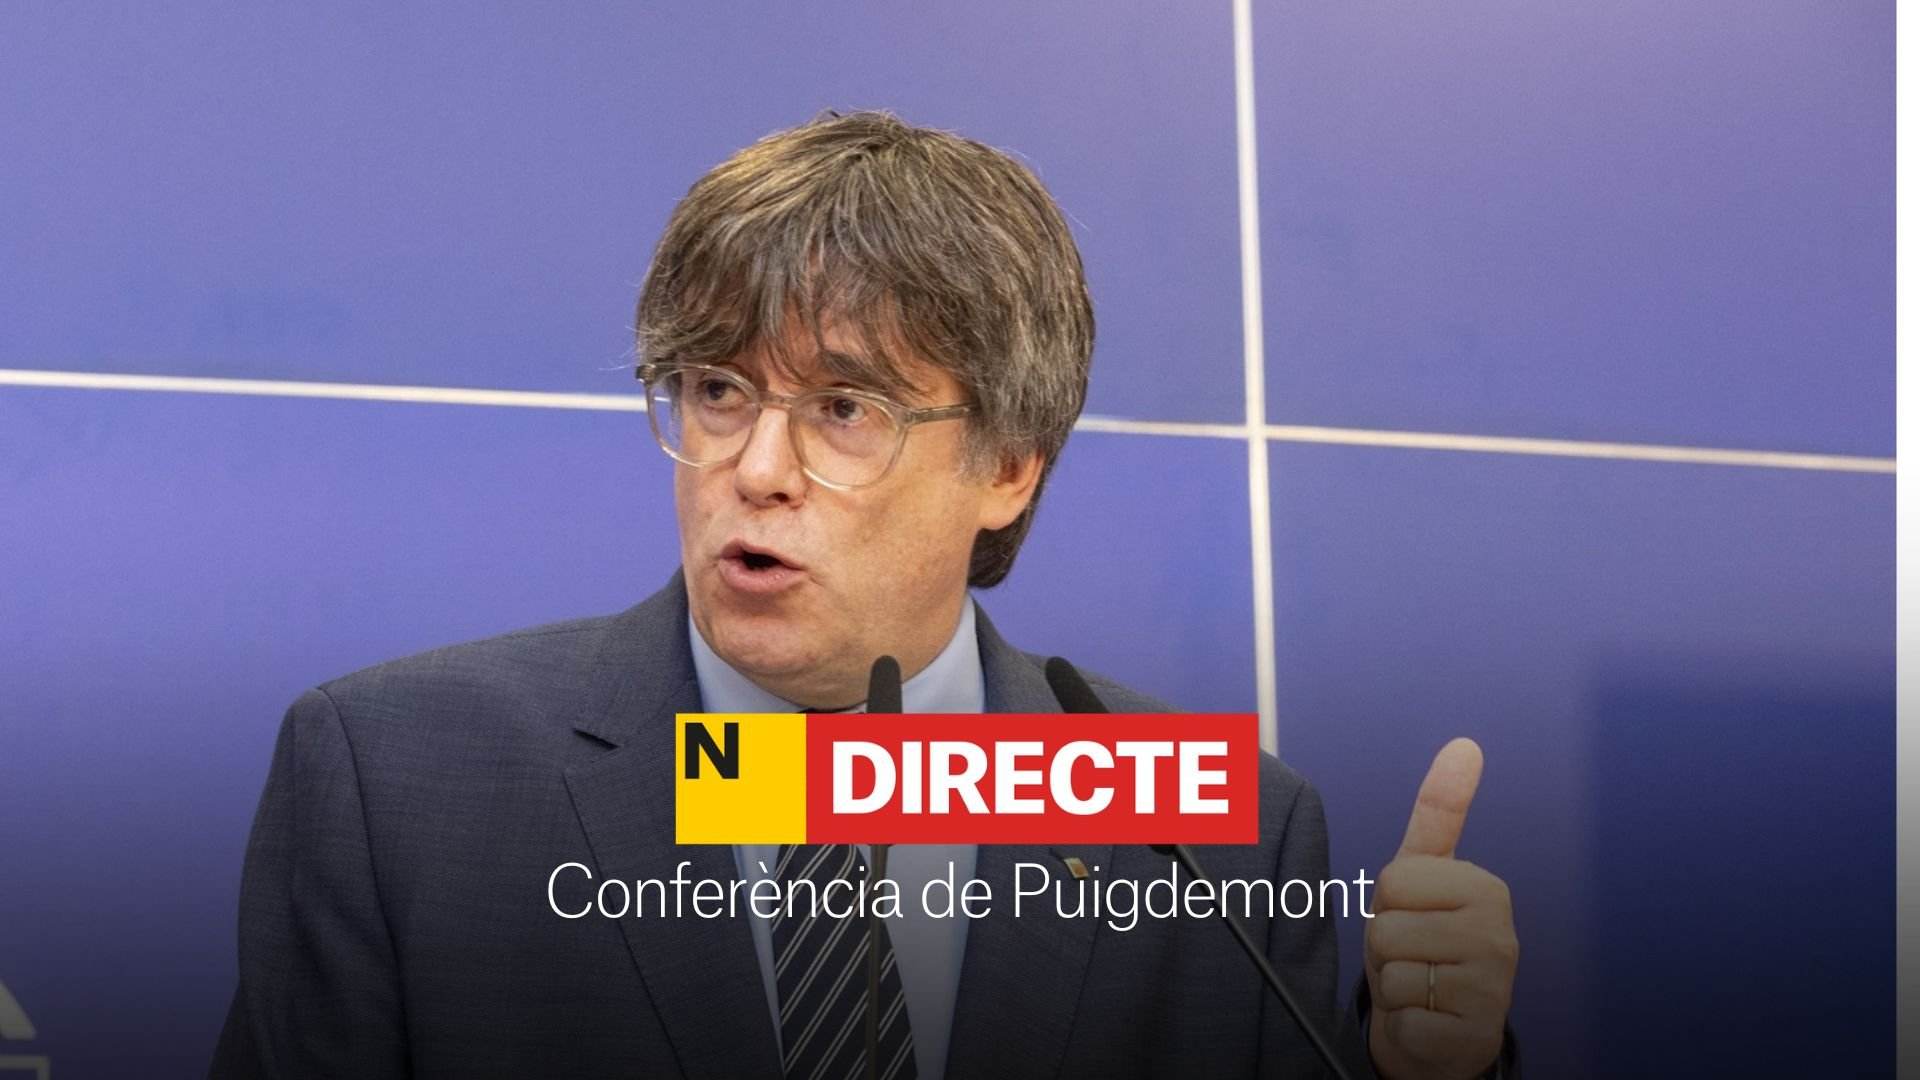 Puigdemont fixa les condicions per la investidura de Pedro Sánchez, DIRECTE | Reaccions i última hora